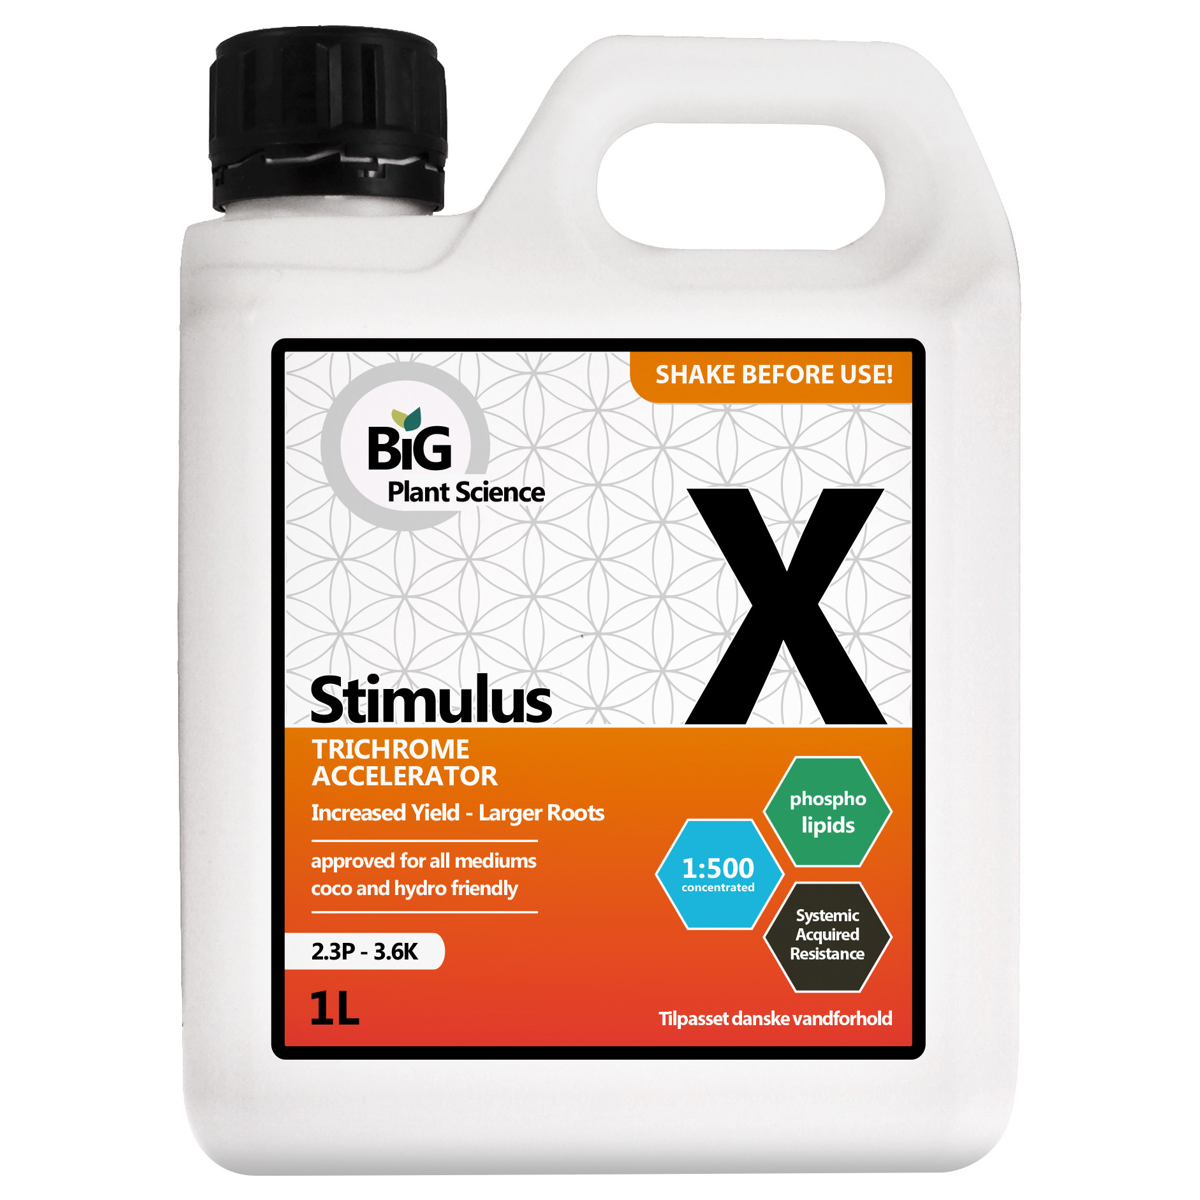 Big plant science X stimulus 1L